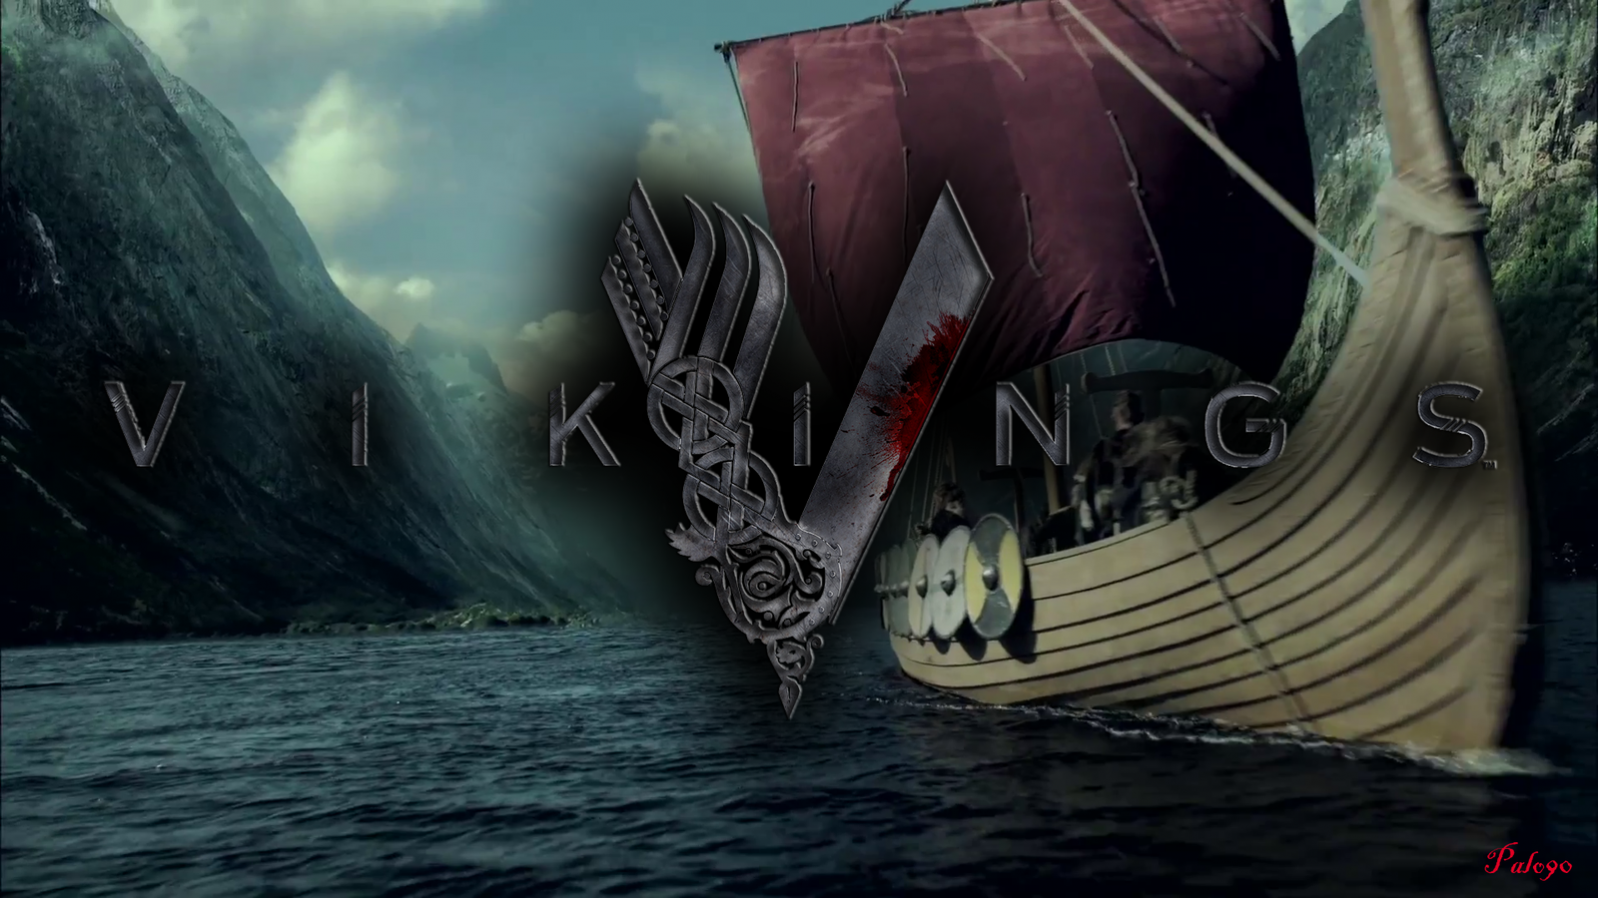 vikings fond d'écran hd,oeuvre de cg,illustration,conception graphique,fiction,bateau fantôme